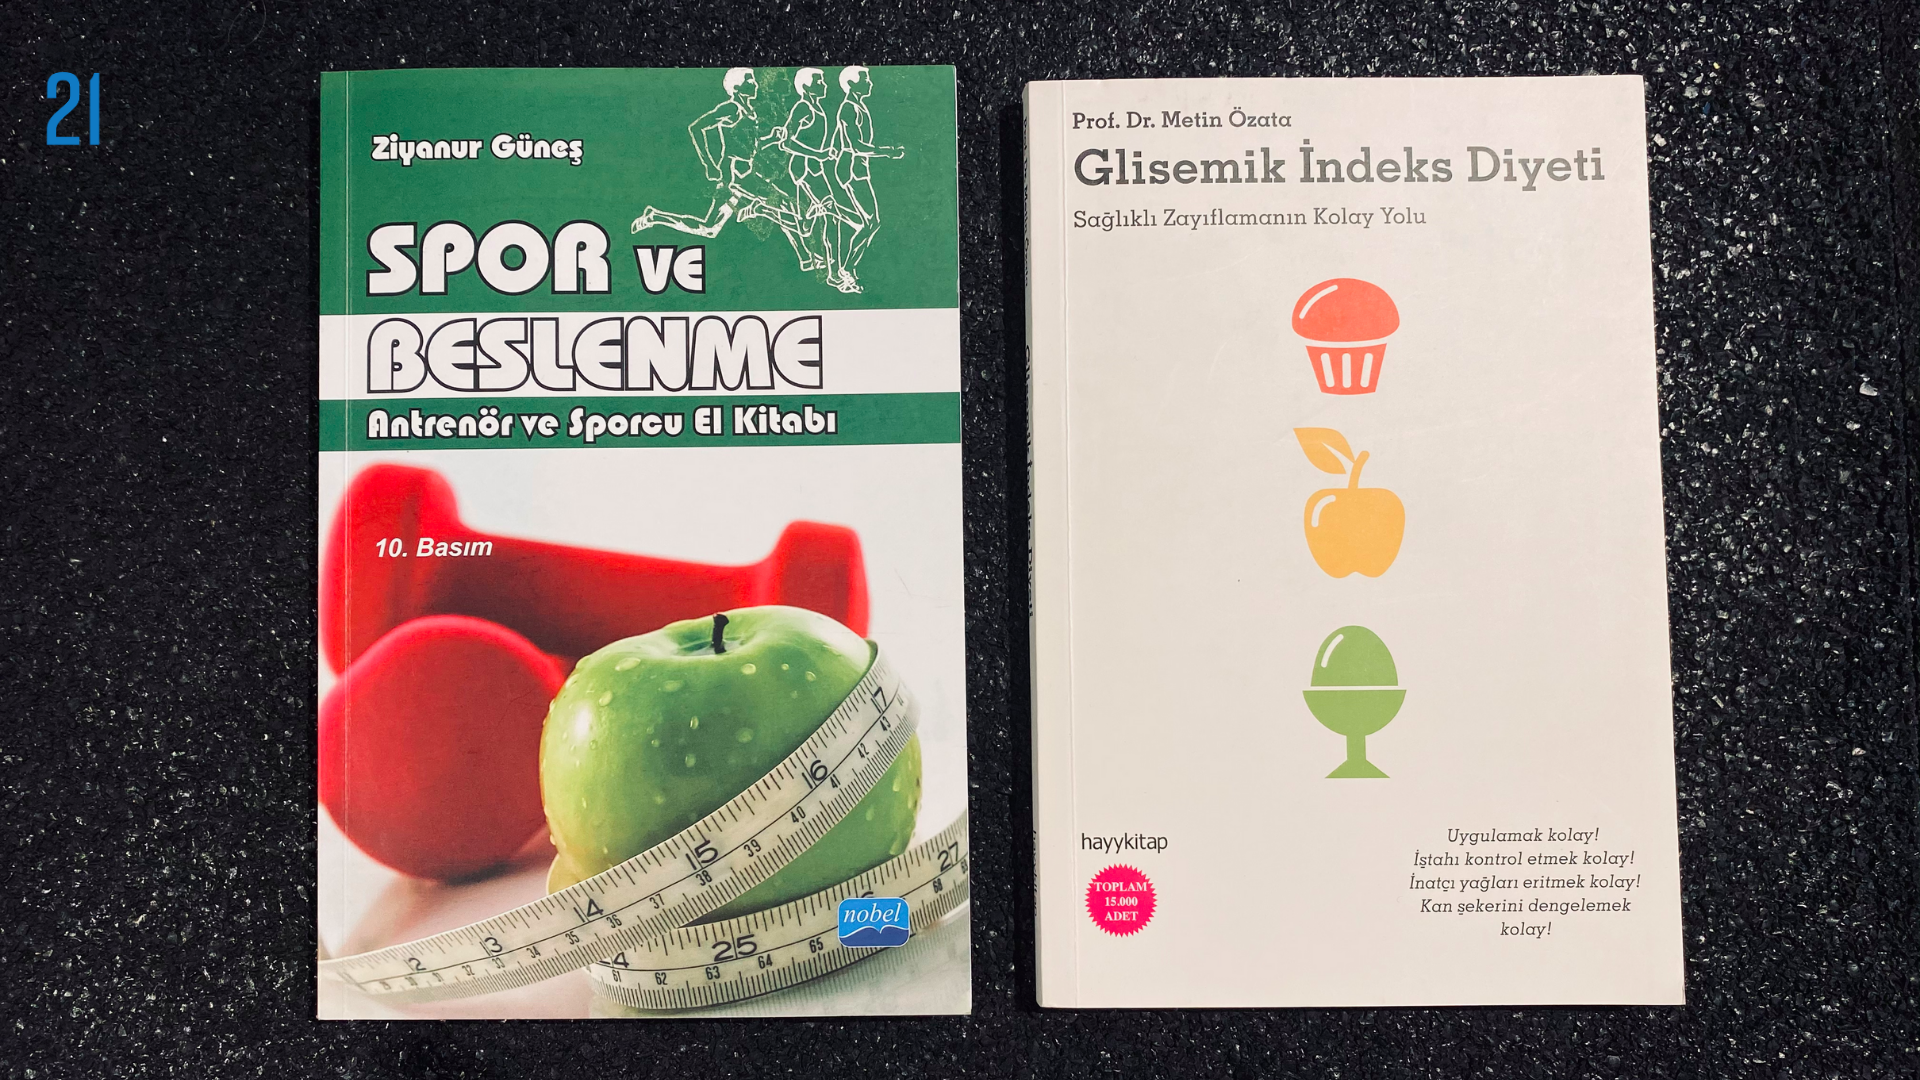 Spor beslenmesi ile ilgili iki kitap görseli.